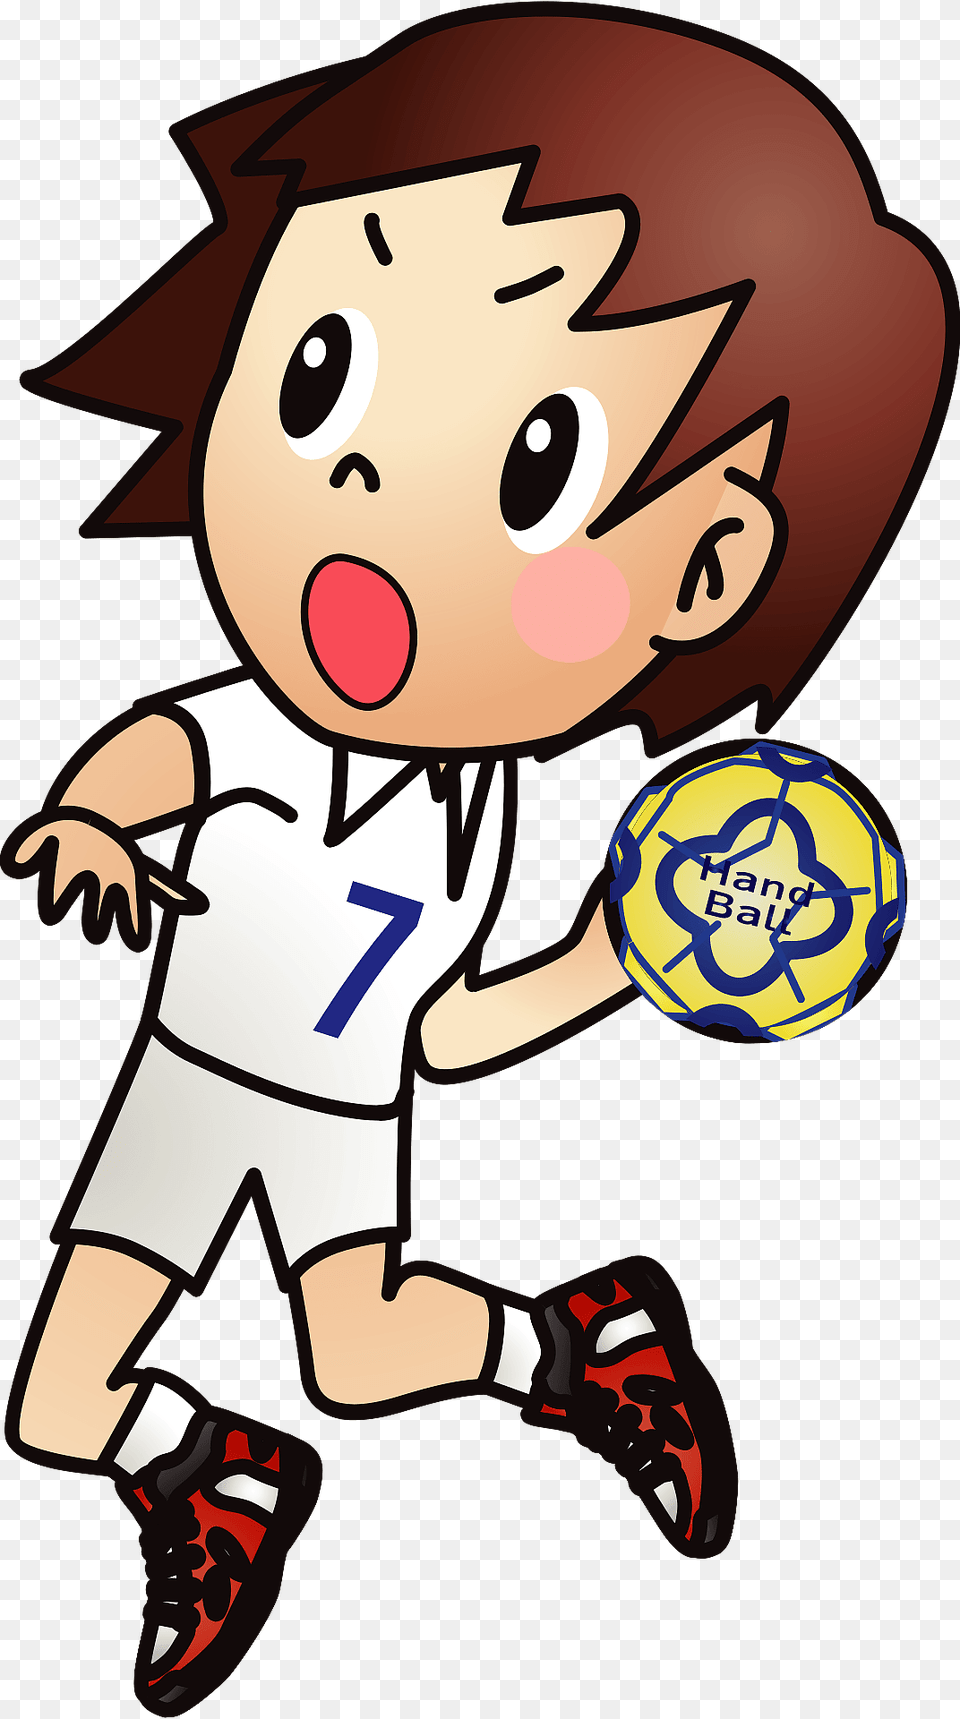 Handball Player Clipart, Ball, Football, Soccer, Soccer Ball Free Transparent Png